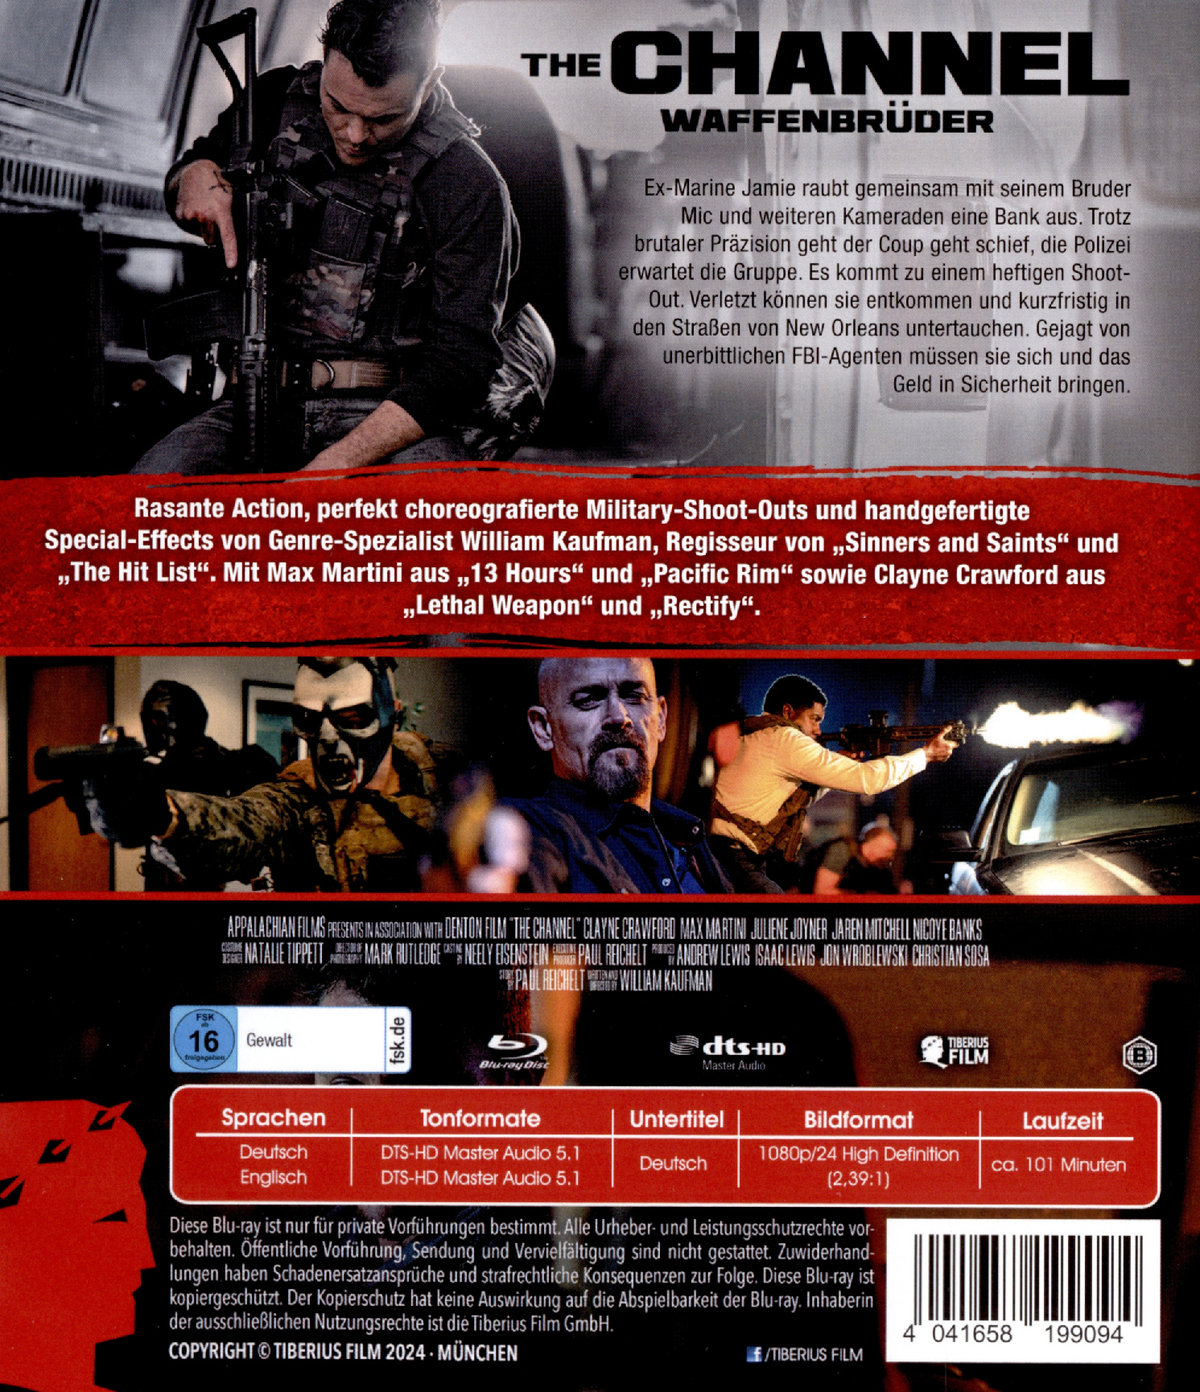 The Channel - Waffenbrüder  (Blu-ray Disc)